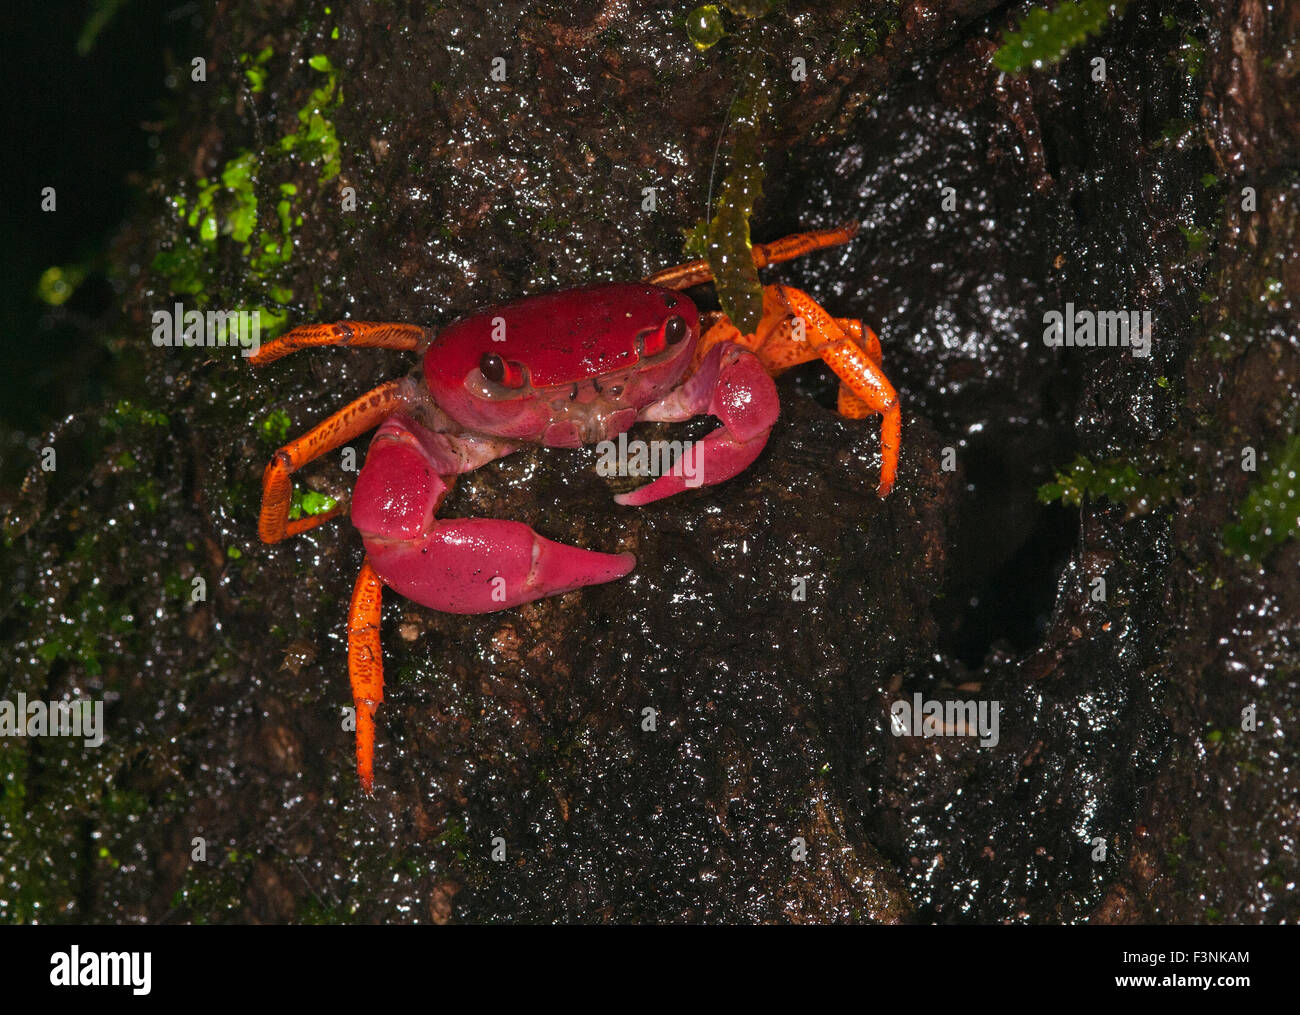 L'image du crabe rouge et orange a été prise à Amboli, Maharashtra, Inde Banque D'Images